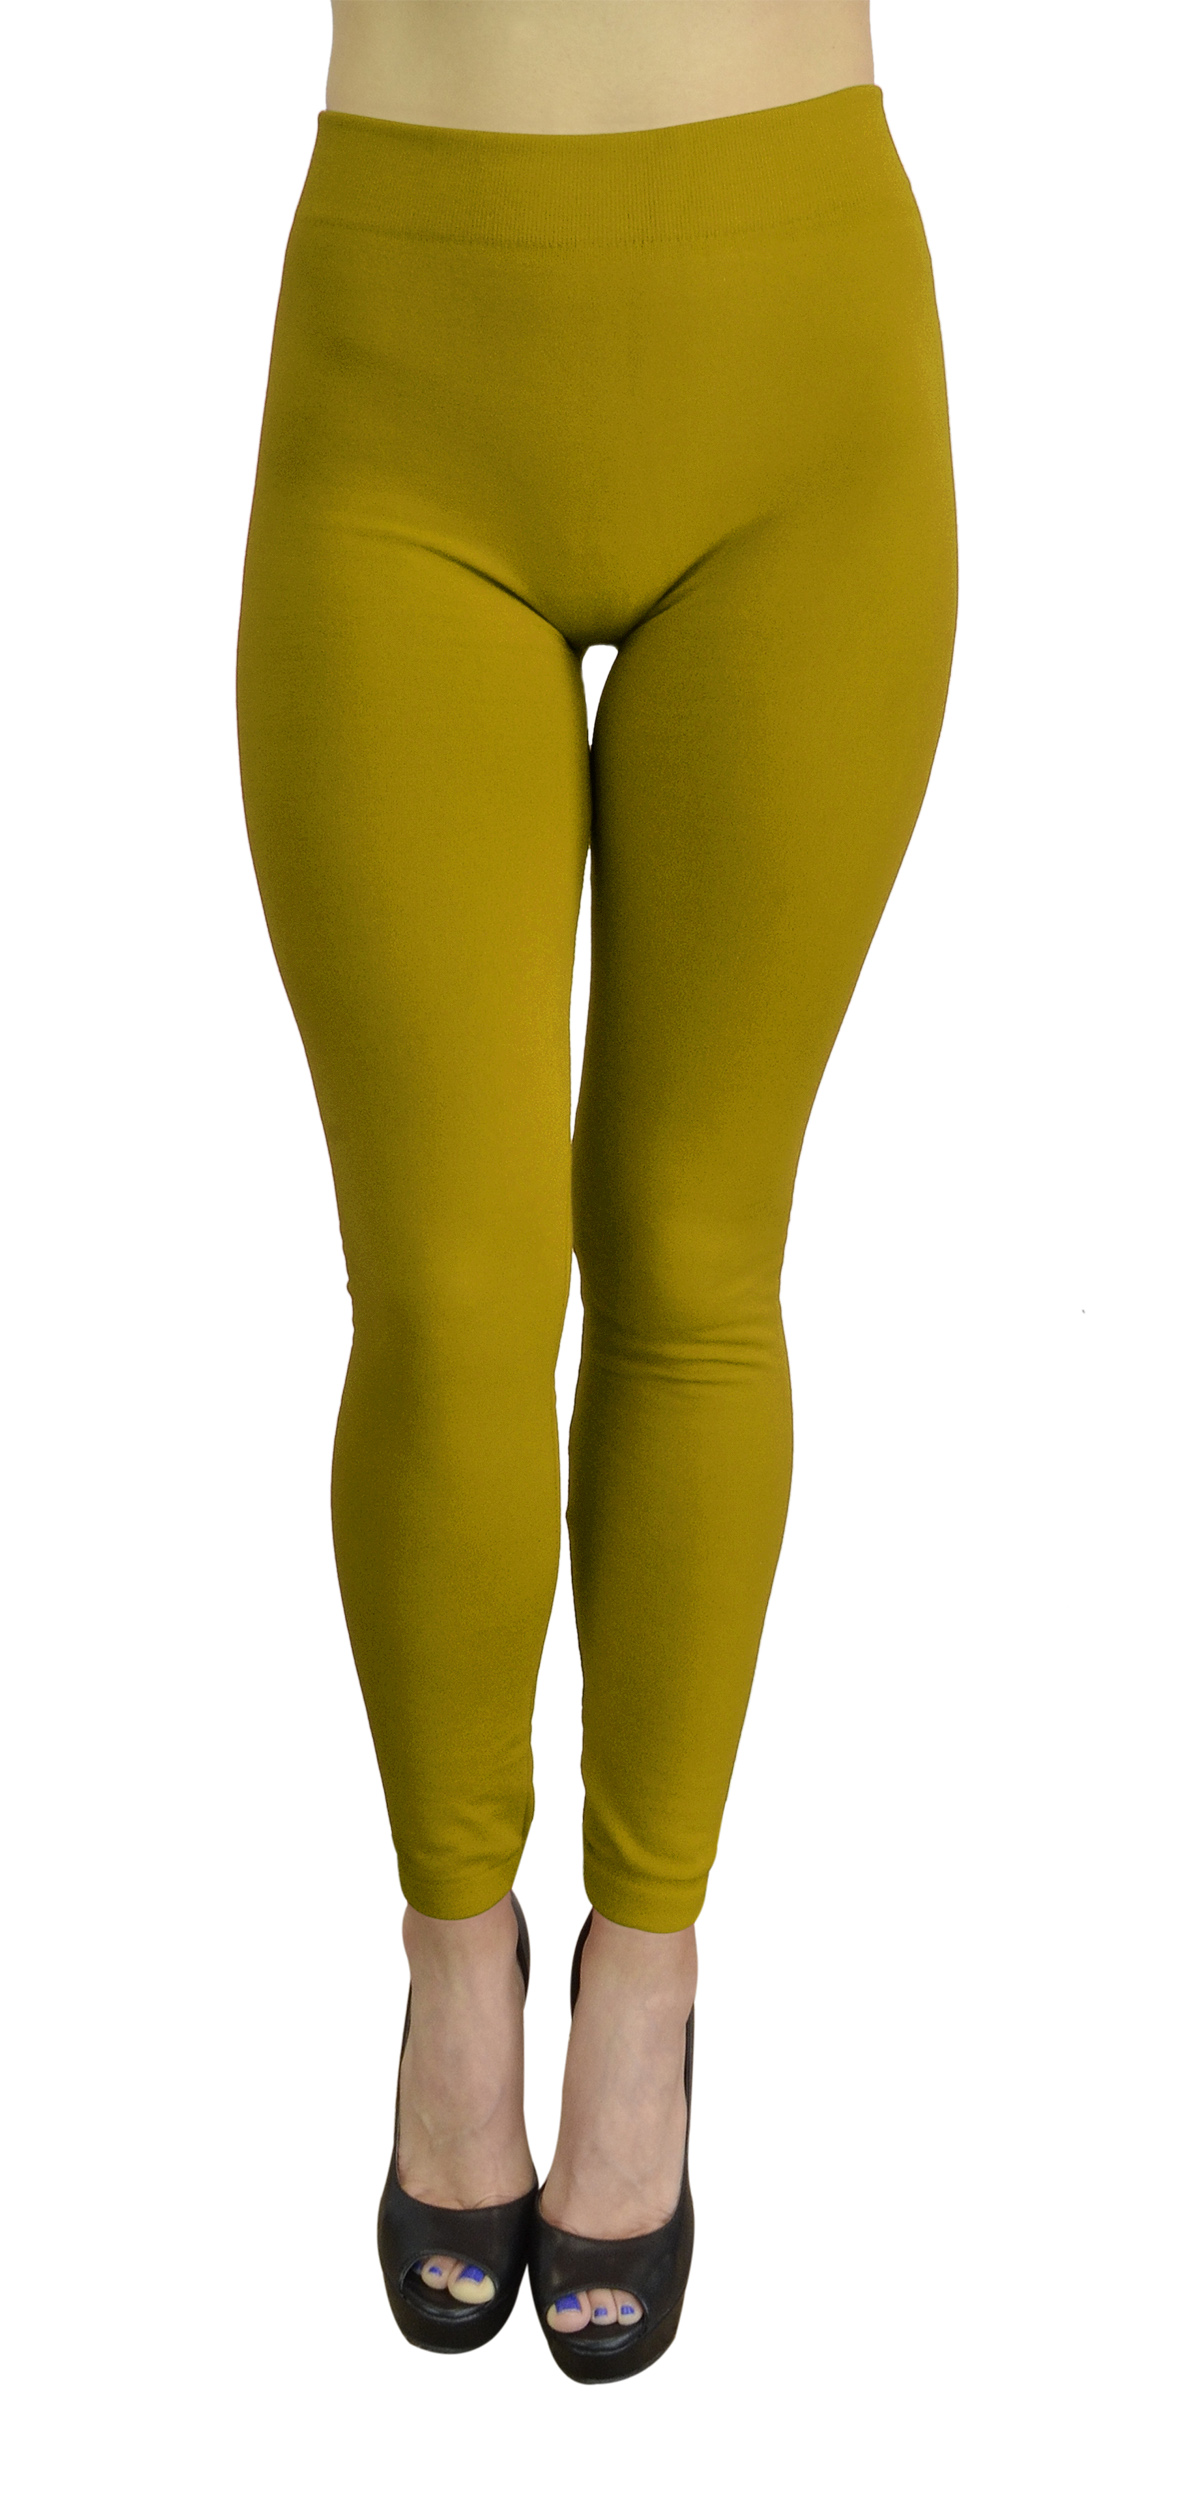 Belle Donne - Women's Fleece Lined Leggings (One Size) - Mustard